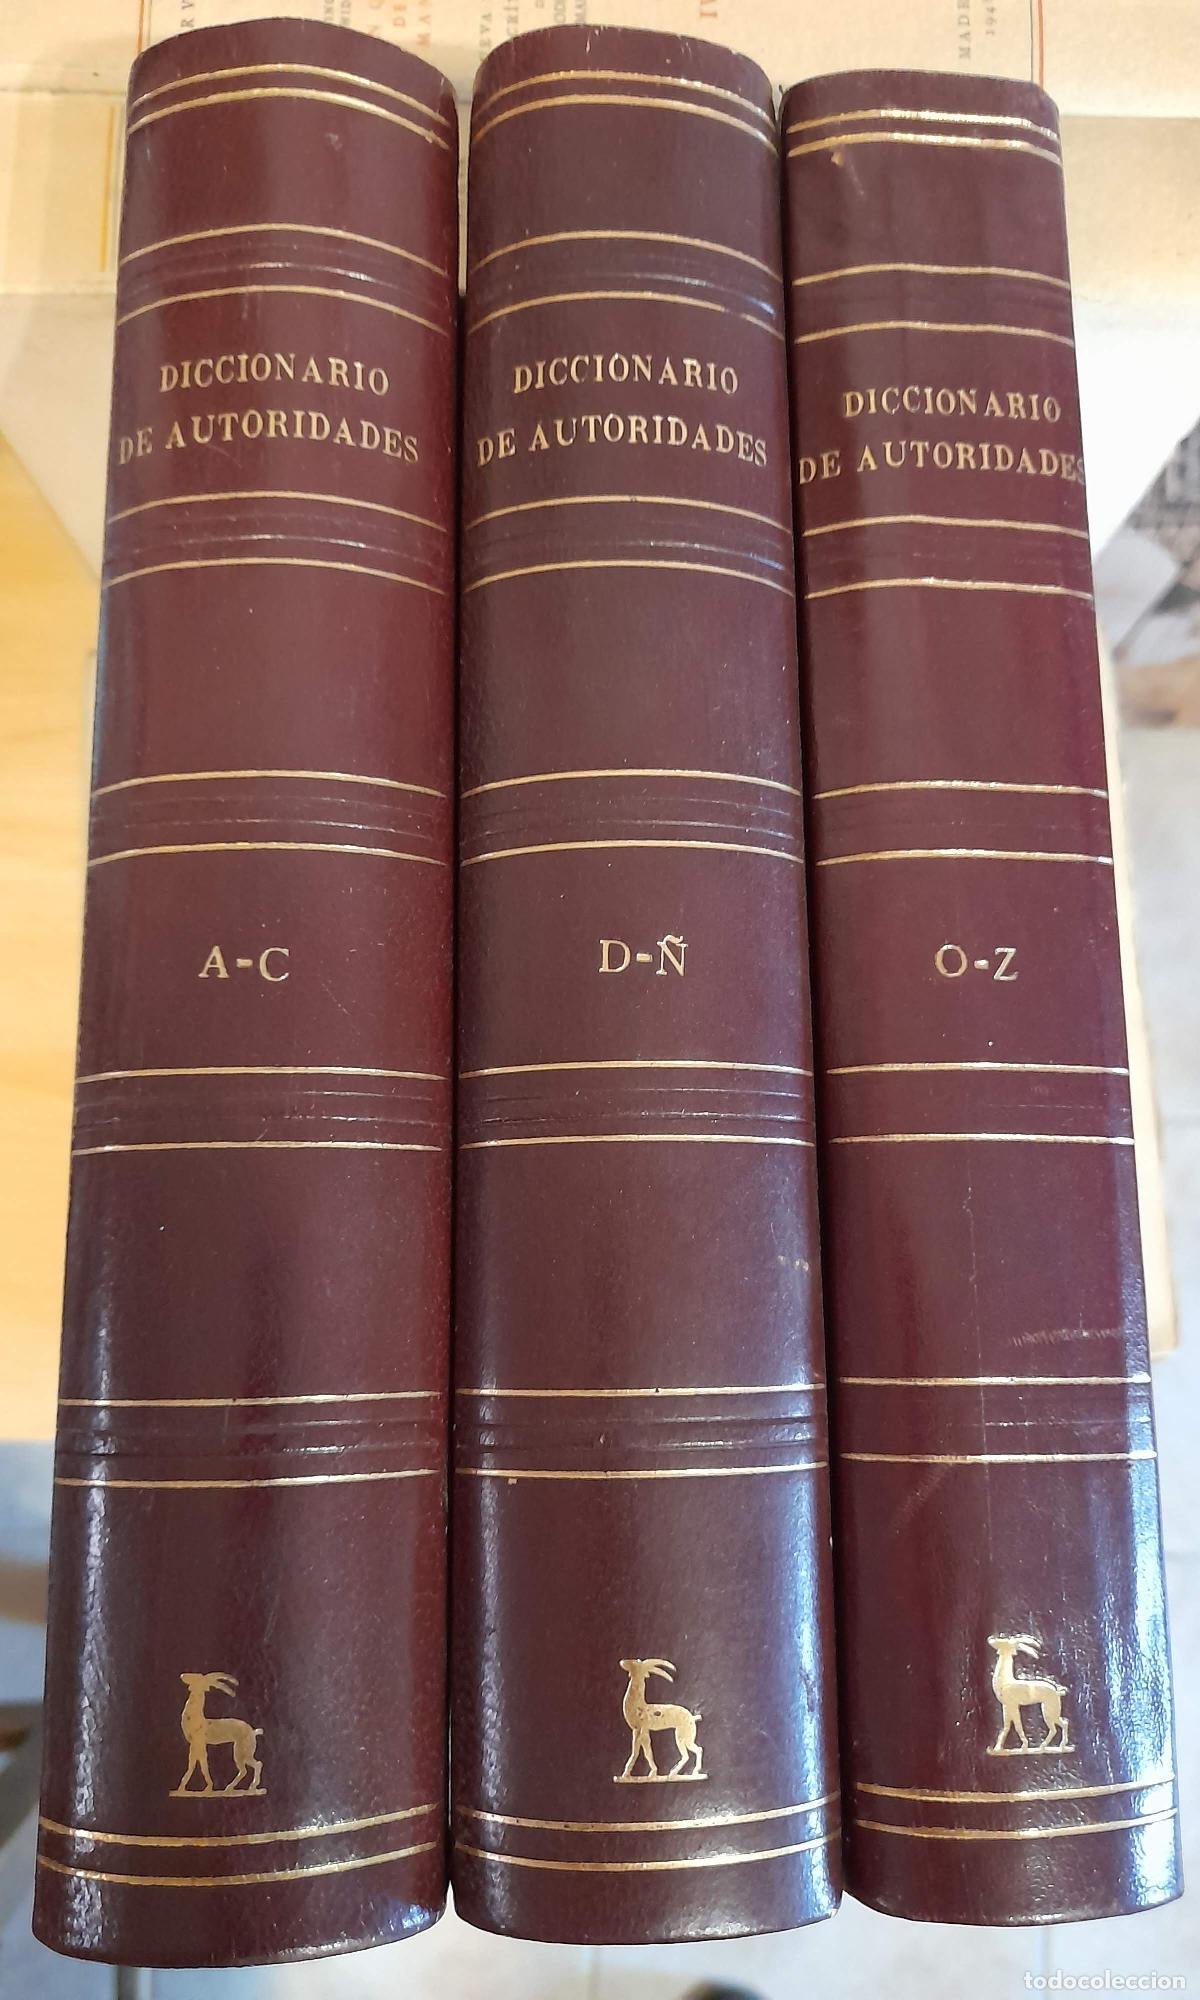 Diccionario de autoridades - Real Academia Española, edición fascimil de  1726-1736. Editorial Gredos